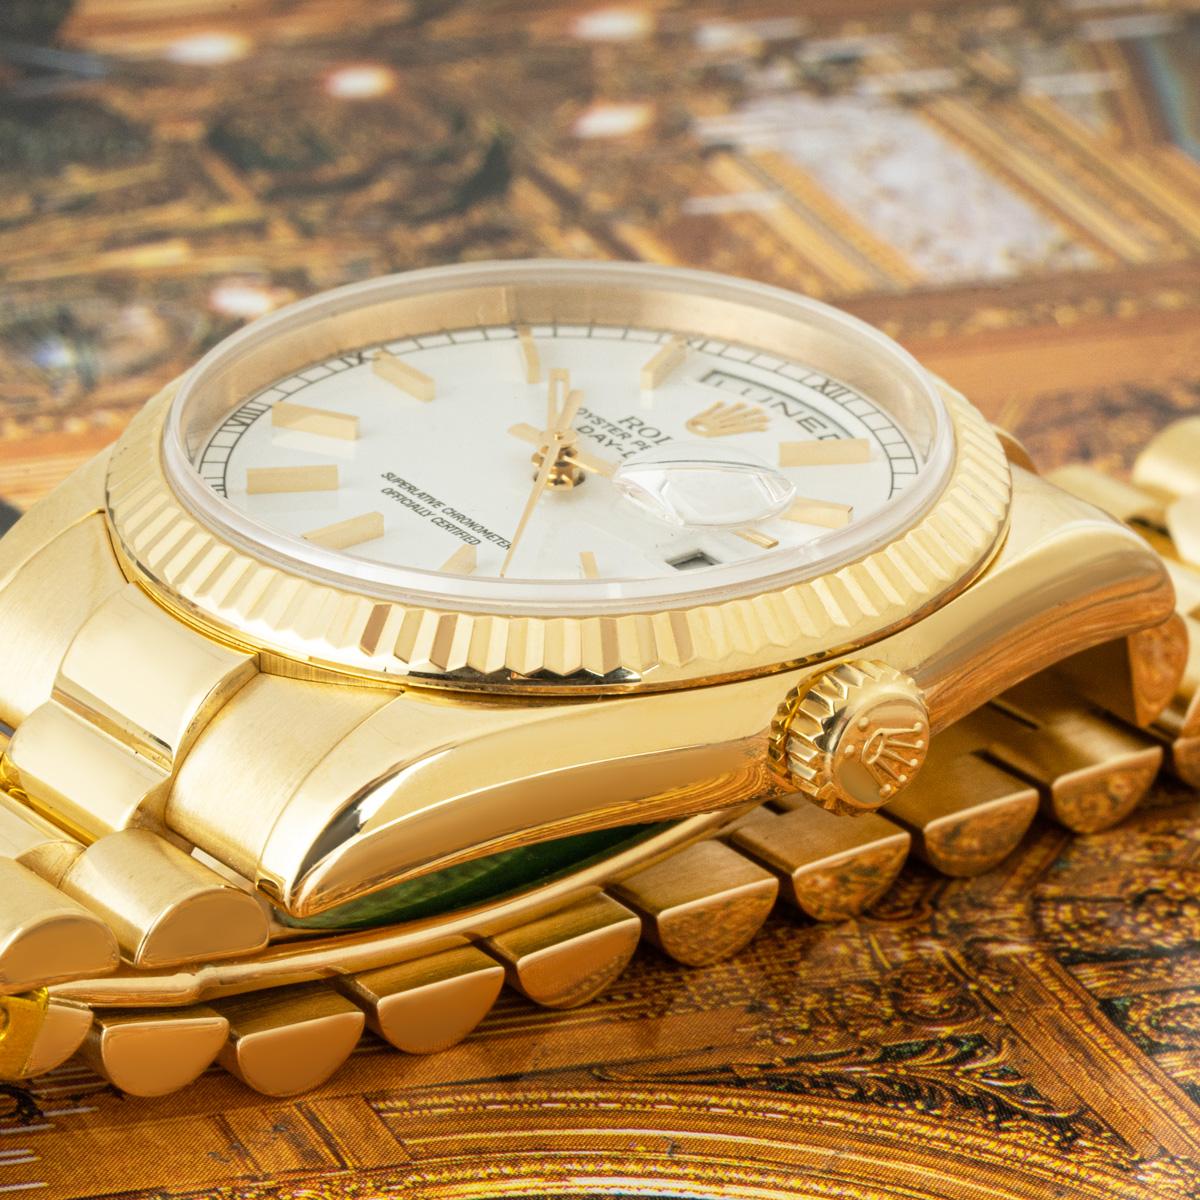 Un Day-Date en or jaune de 36 mm de Rolex. Whiting : cadran blanc avec index appliqués et chiffres romains sur le pourtour du cadran, lunette cannelée en or jaune. Le bracelet président est doté d'un fermoir à couronne dissimulé. Elle est équipée